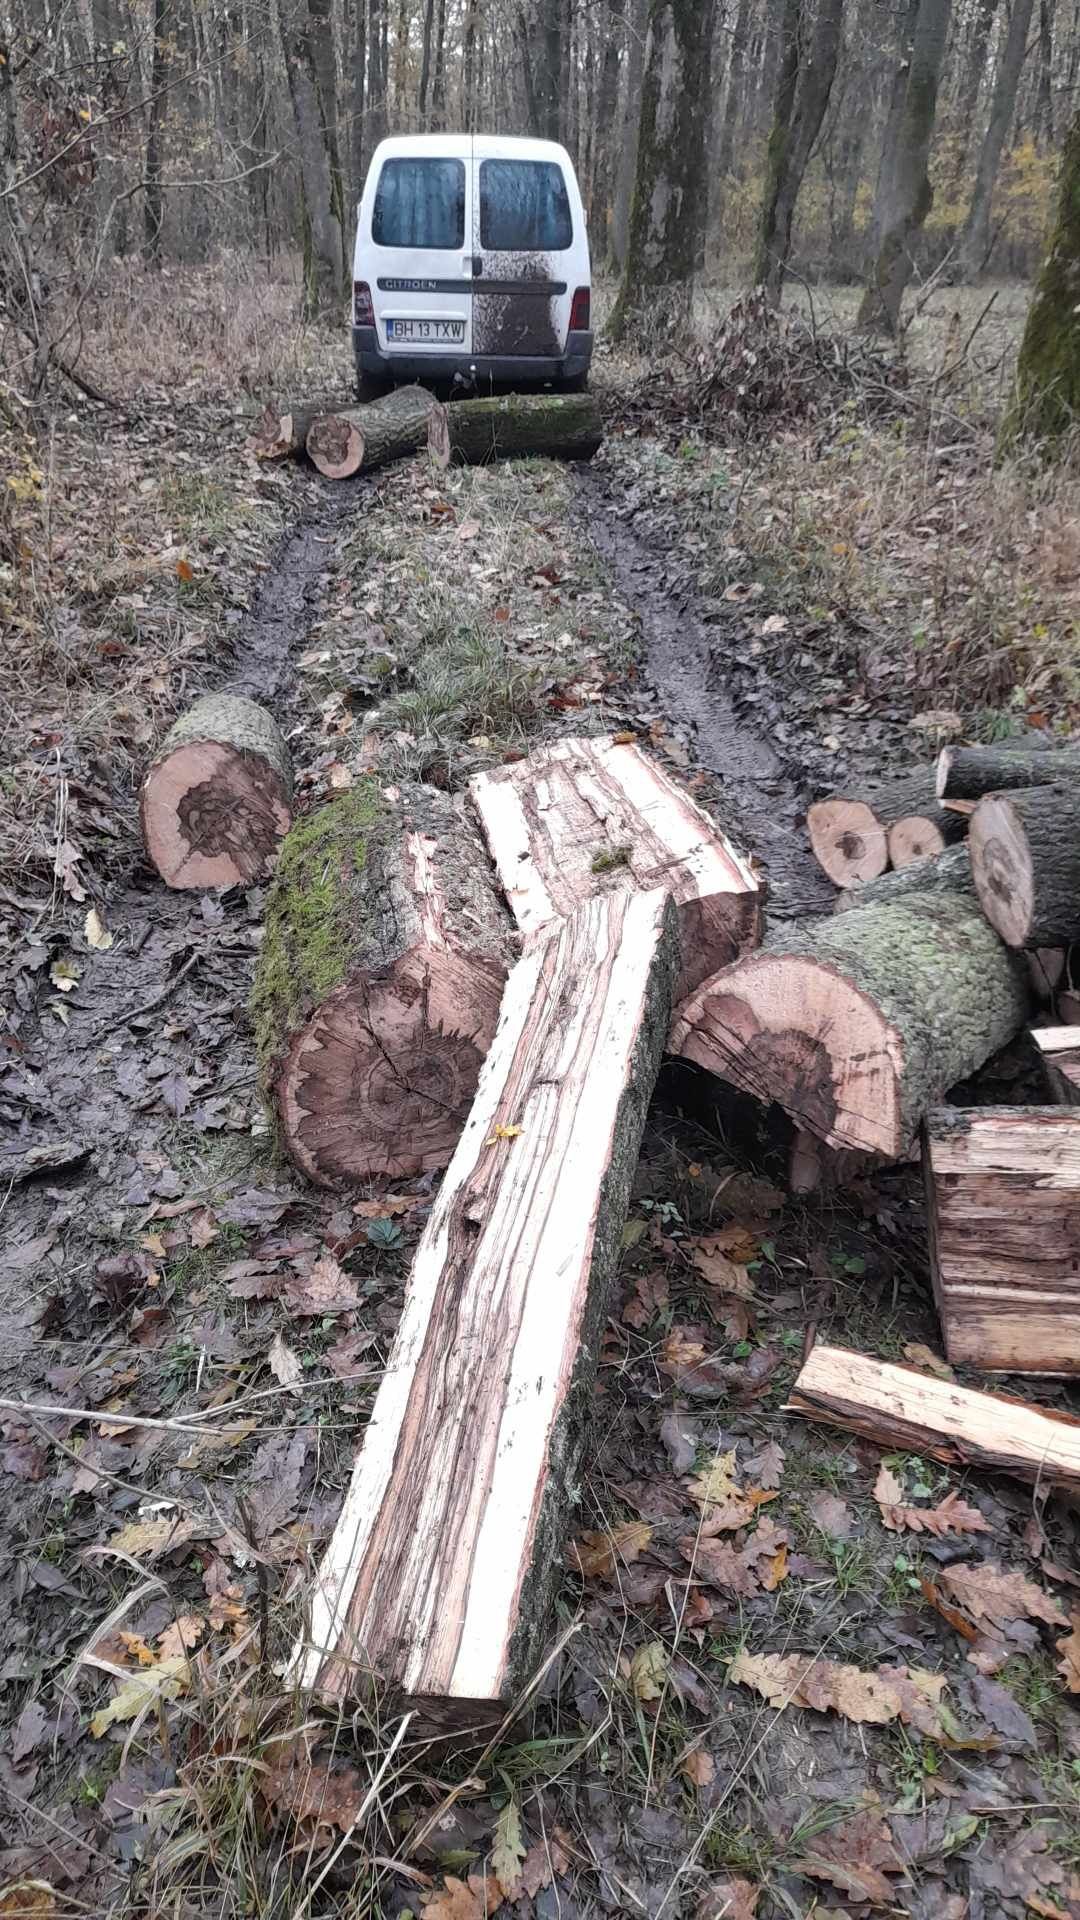 Vand lemne de foc